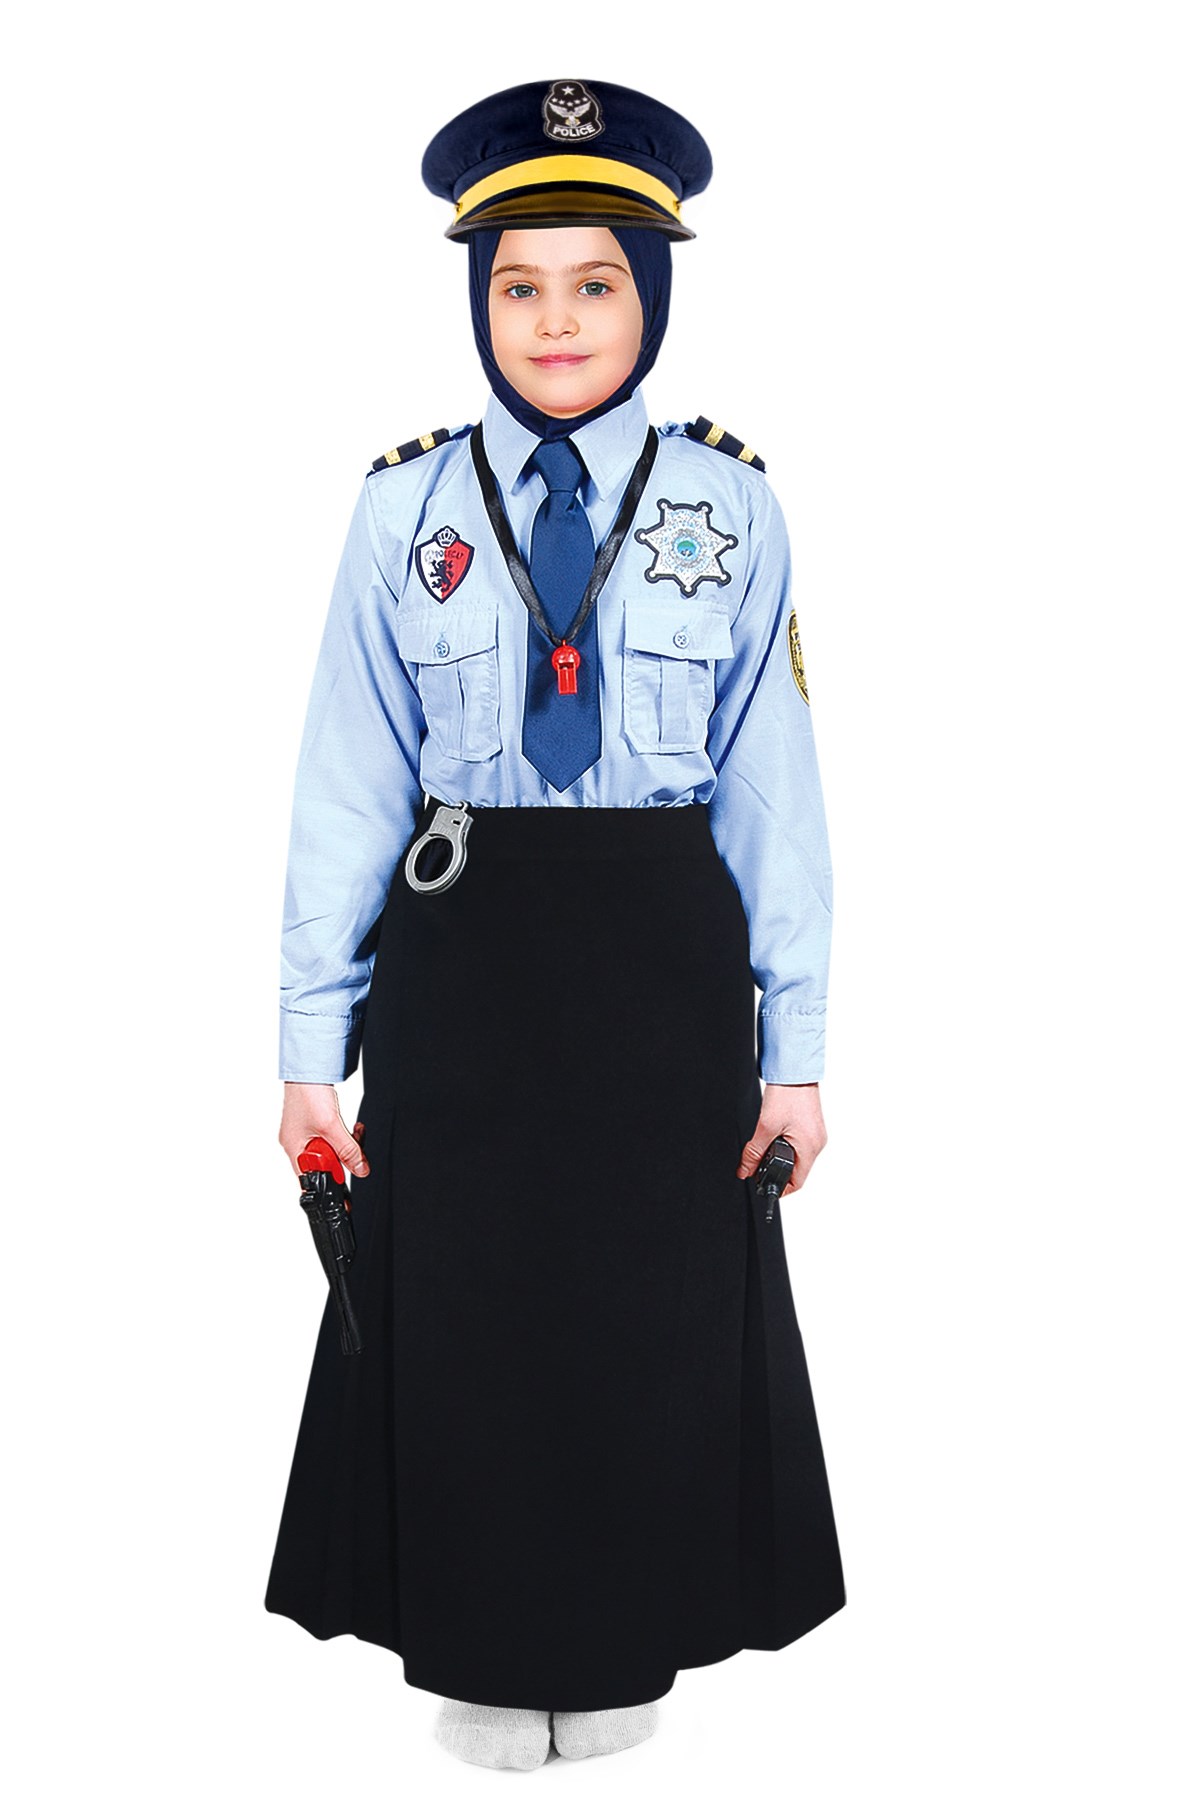 Polis Kız Çocuk Kostümü | Polis Kostümü Modelleri - Oulabi Mir